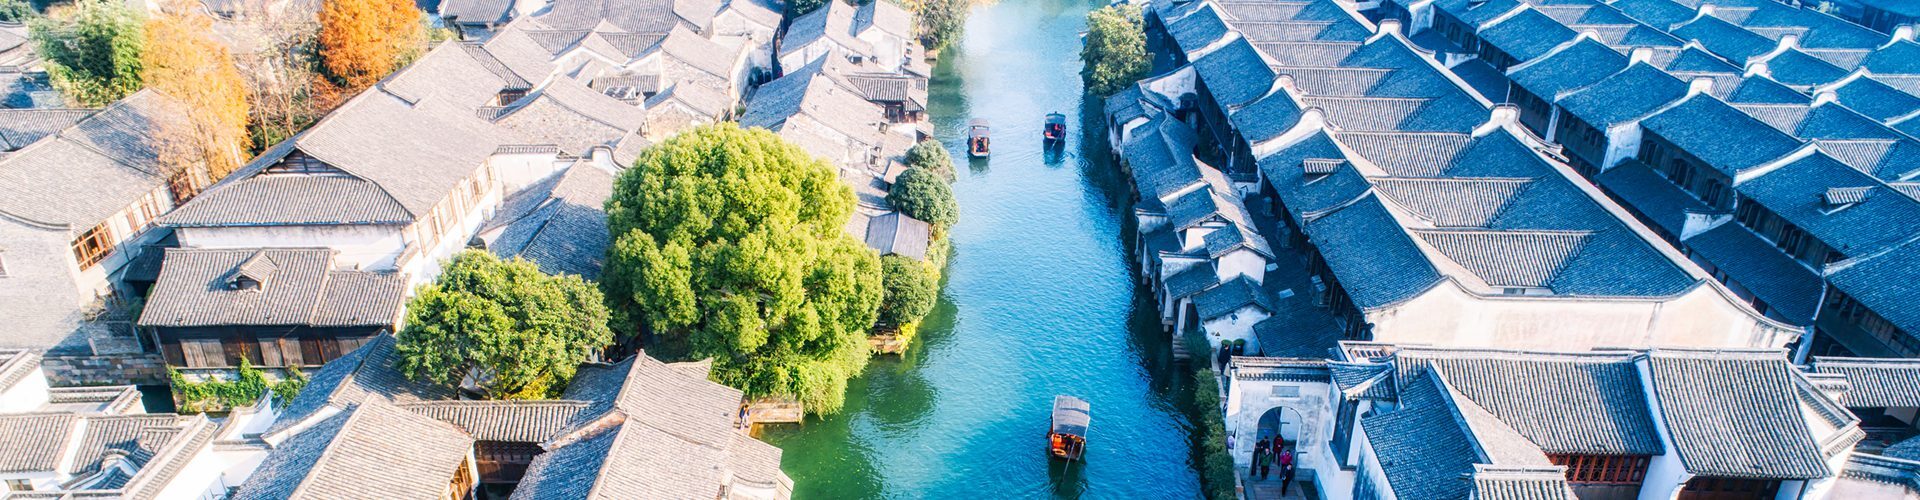 Wuzhen Water Town - the Most Representative Water Town of Jiangnan